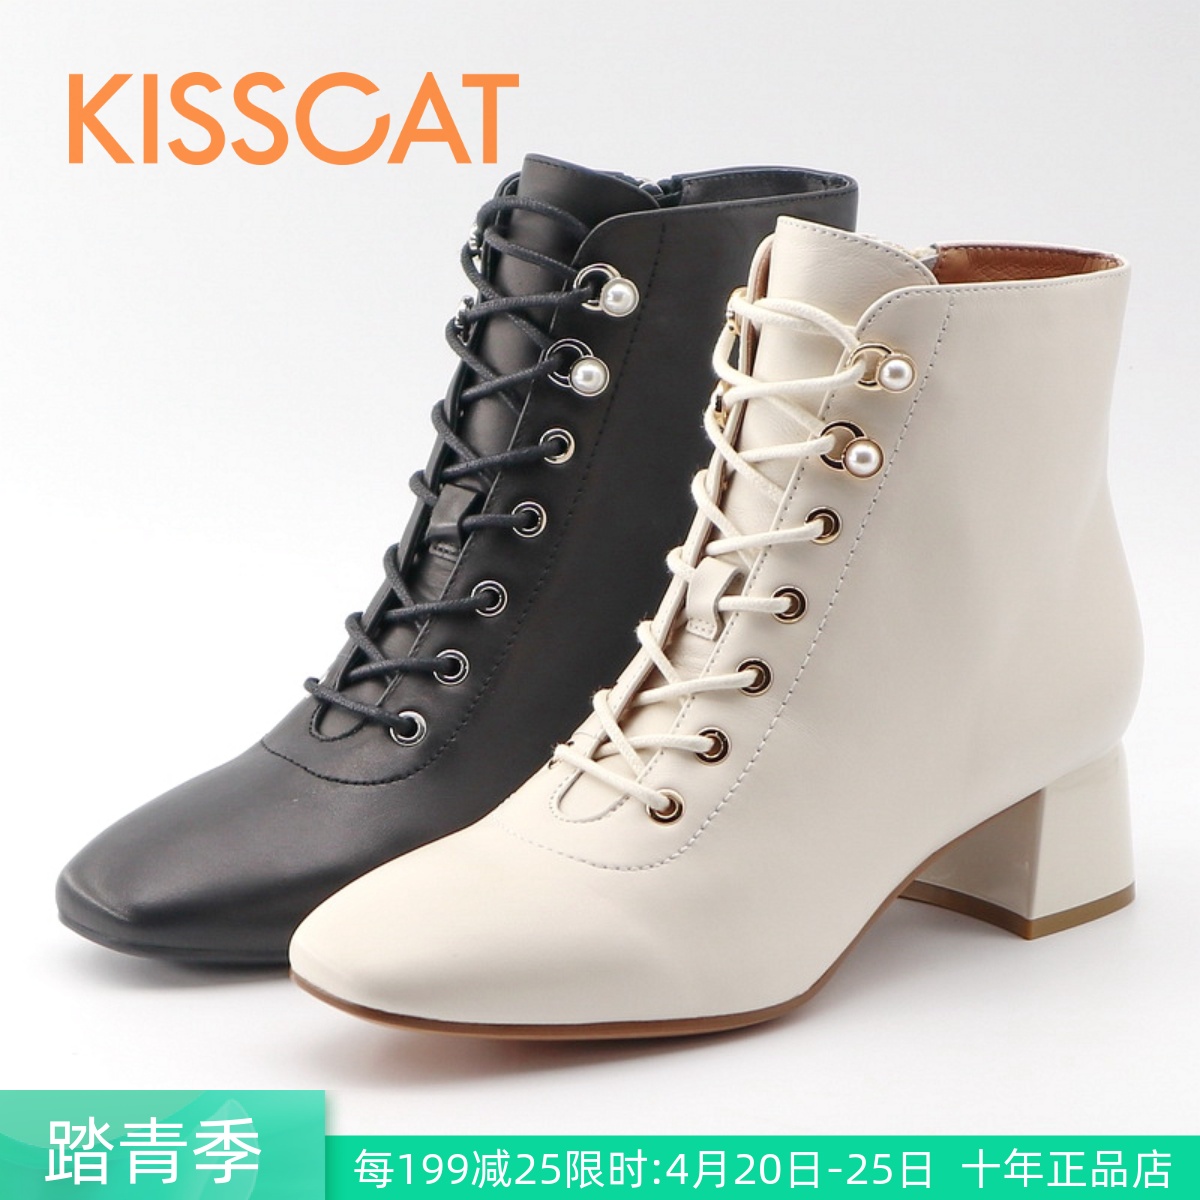 KISSCAT接吻猫2021秋冬正品粗跟系带羊皮珍珠女短靴子KA21527-10